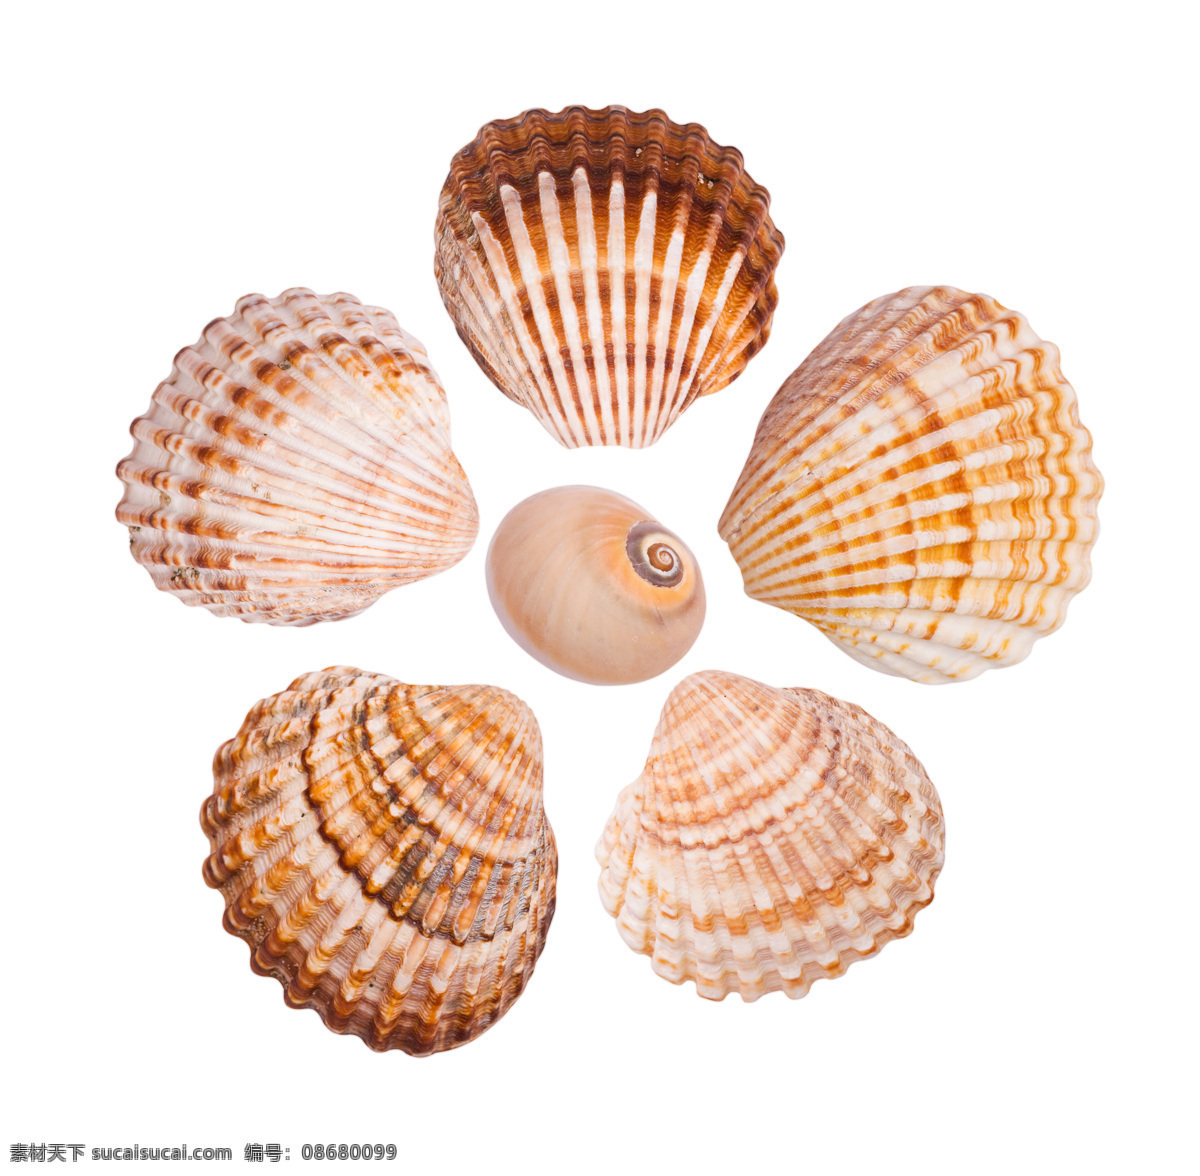 贝壳集合 贝壳设计 贝壳背面 贝壳俯视图 贝壳鸟瞰图 图标标签标志 生物世界 海洋生物